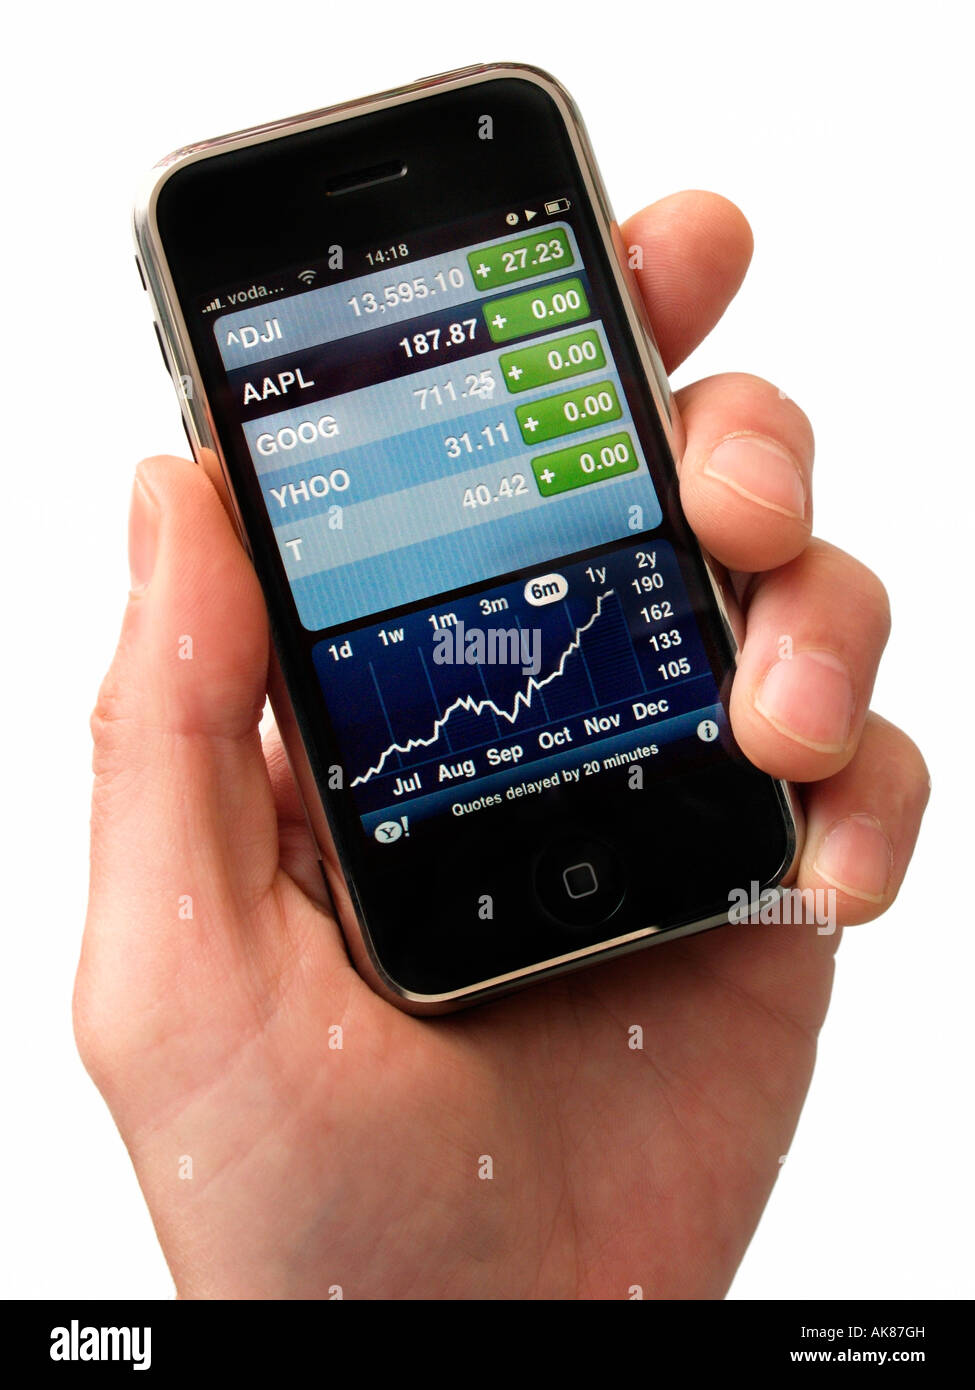 Main tenant l'iphone avec des actions apple aapl performance affichée sur l'écran tactile fond blanc Banque D'Images